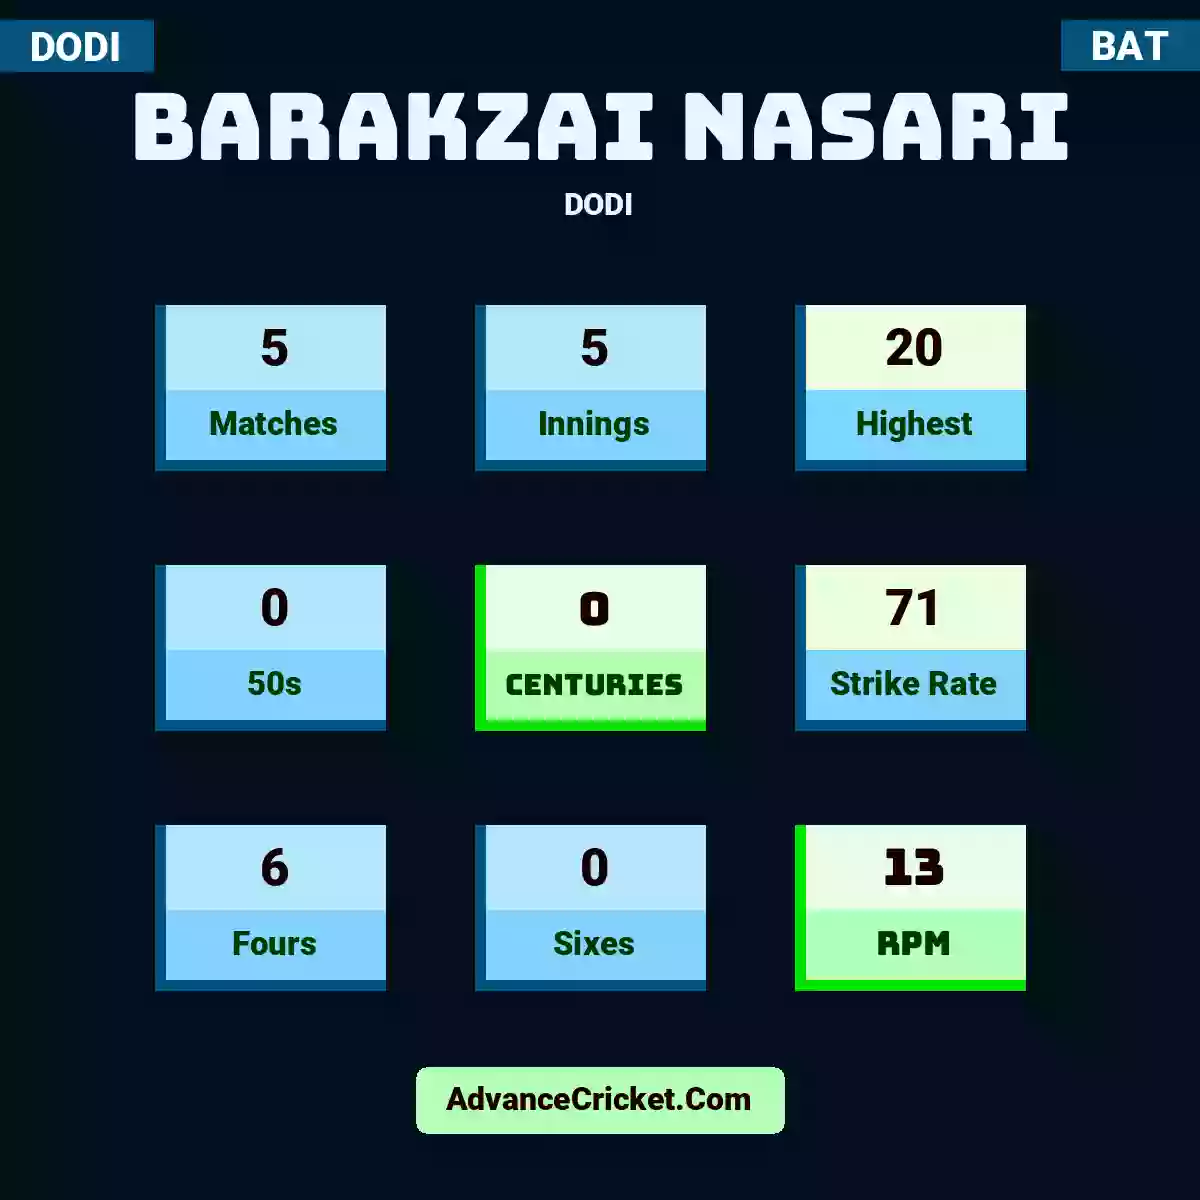 Barakzai Nasari DODI , Barakzai Nasari played 5 matches, scored 20 runs as highest, 0 half-centuries, and 0 centuries, with a strike rate of 71. B.Nasari hit 6 fours and 0 sixes, with an RPM of 13.